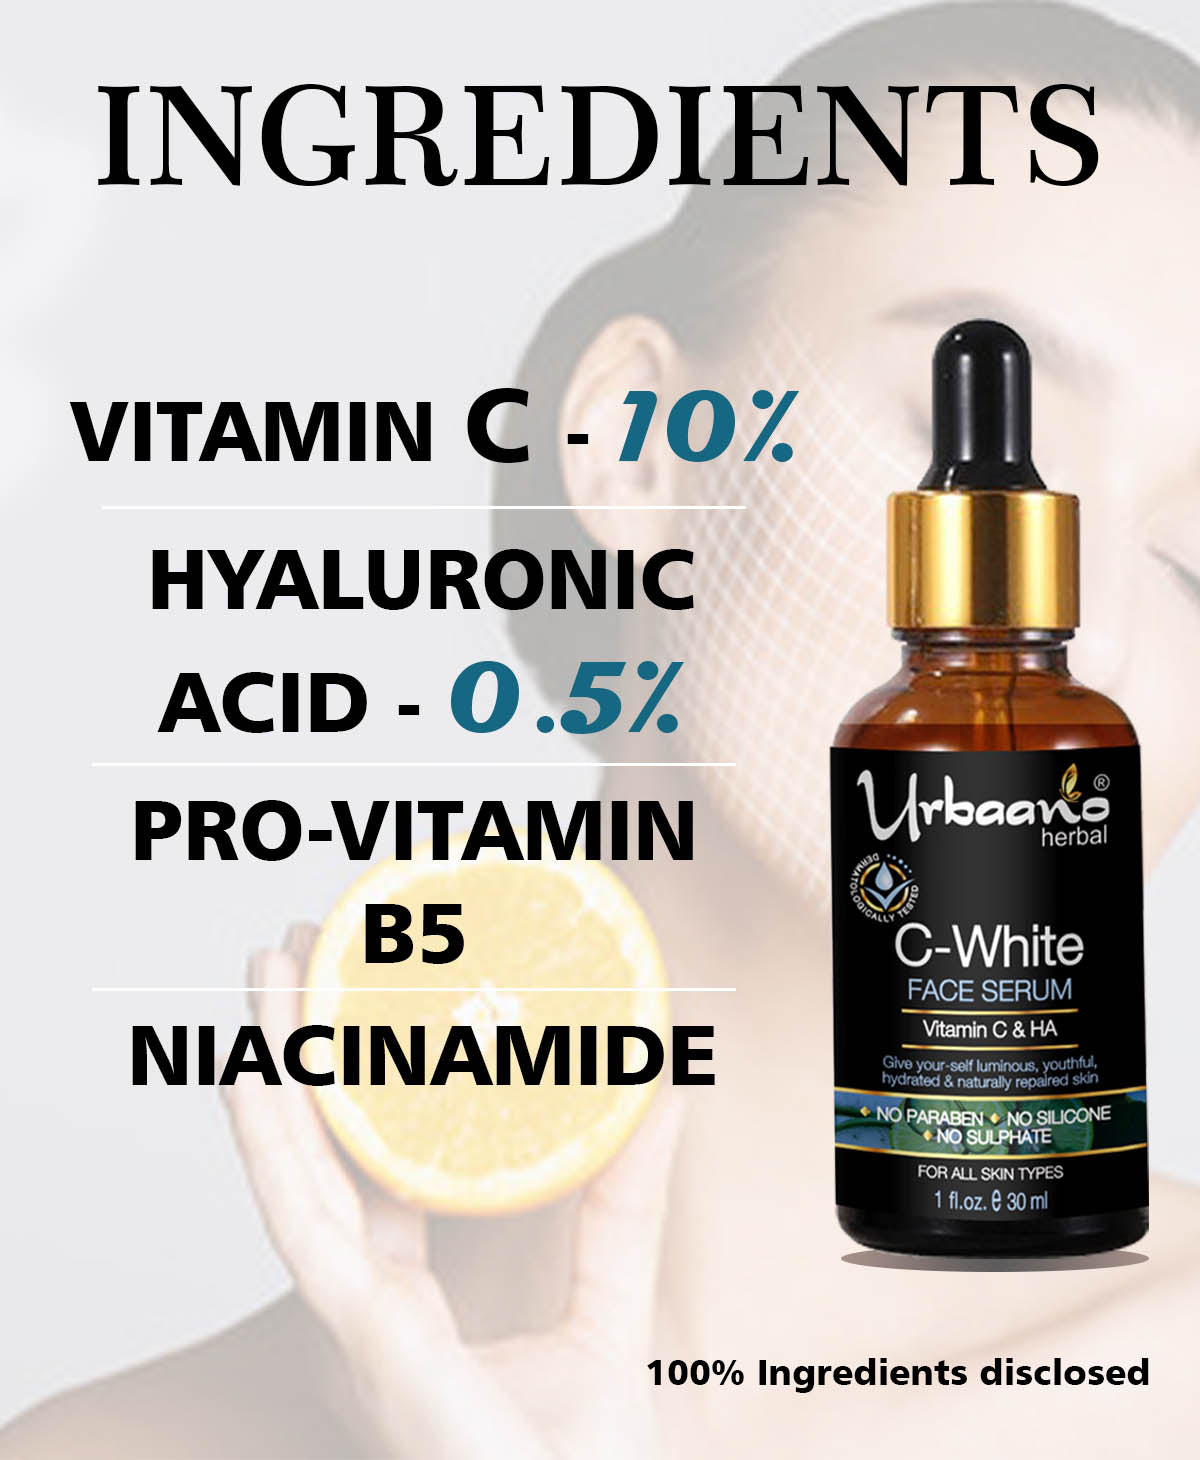 urbaano herbal kumkumadi cream & vitamin C serum age reversal  with hyaluronic  skin care combo